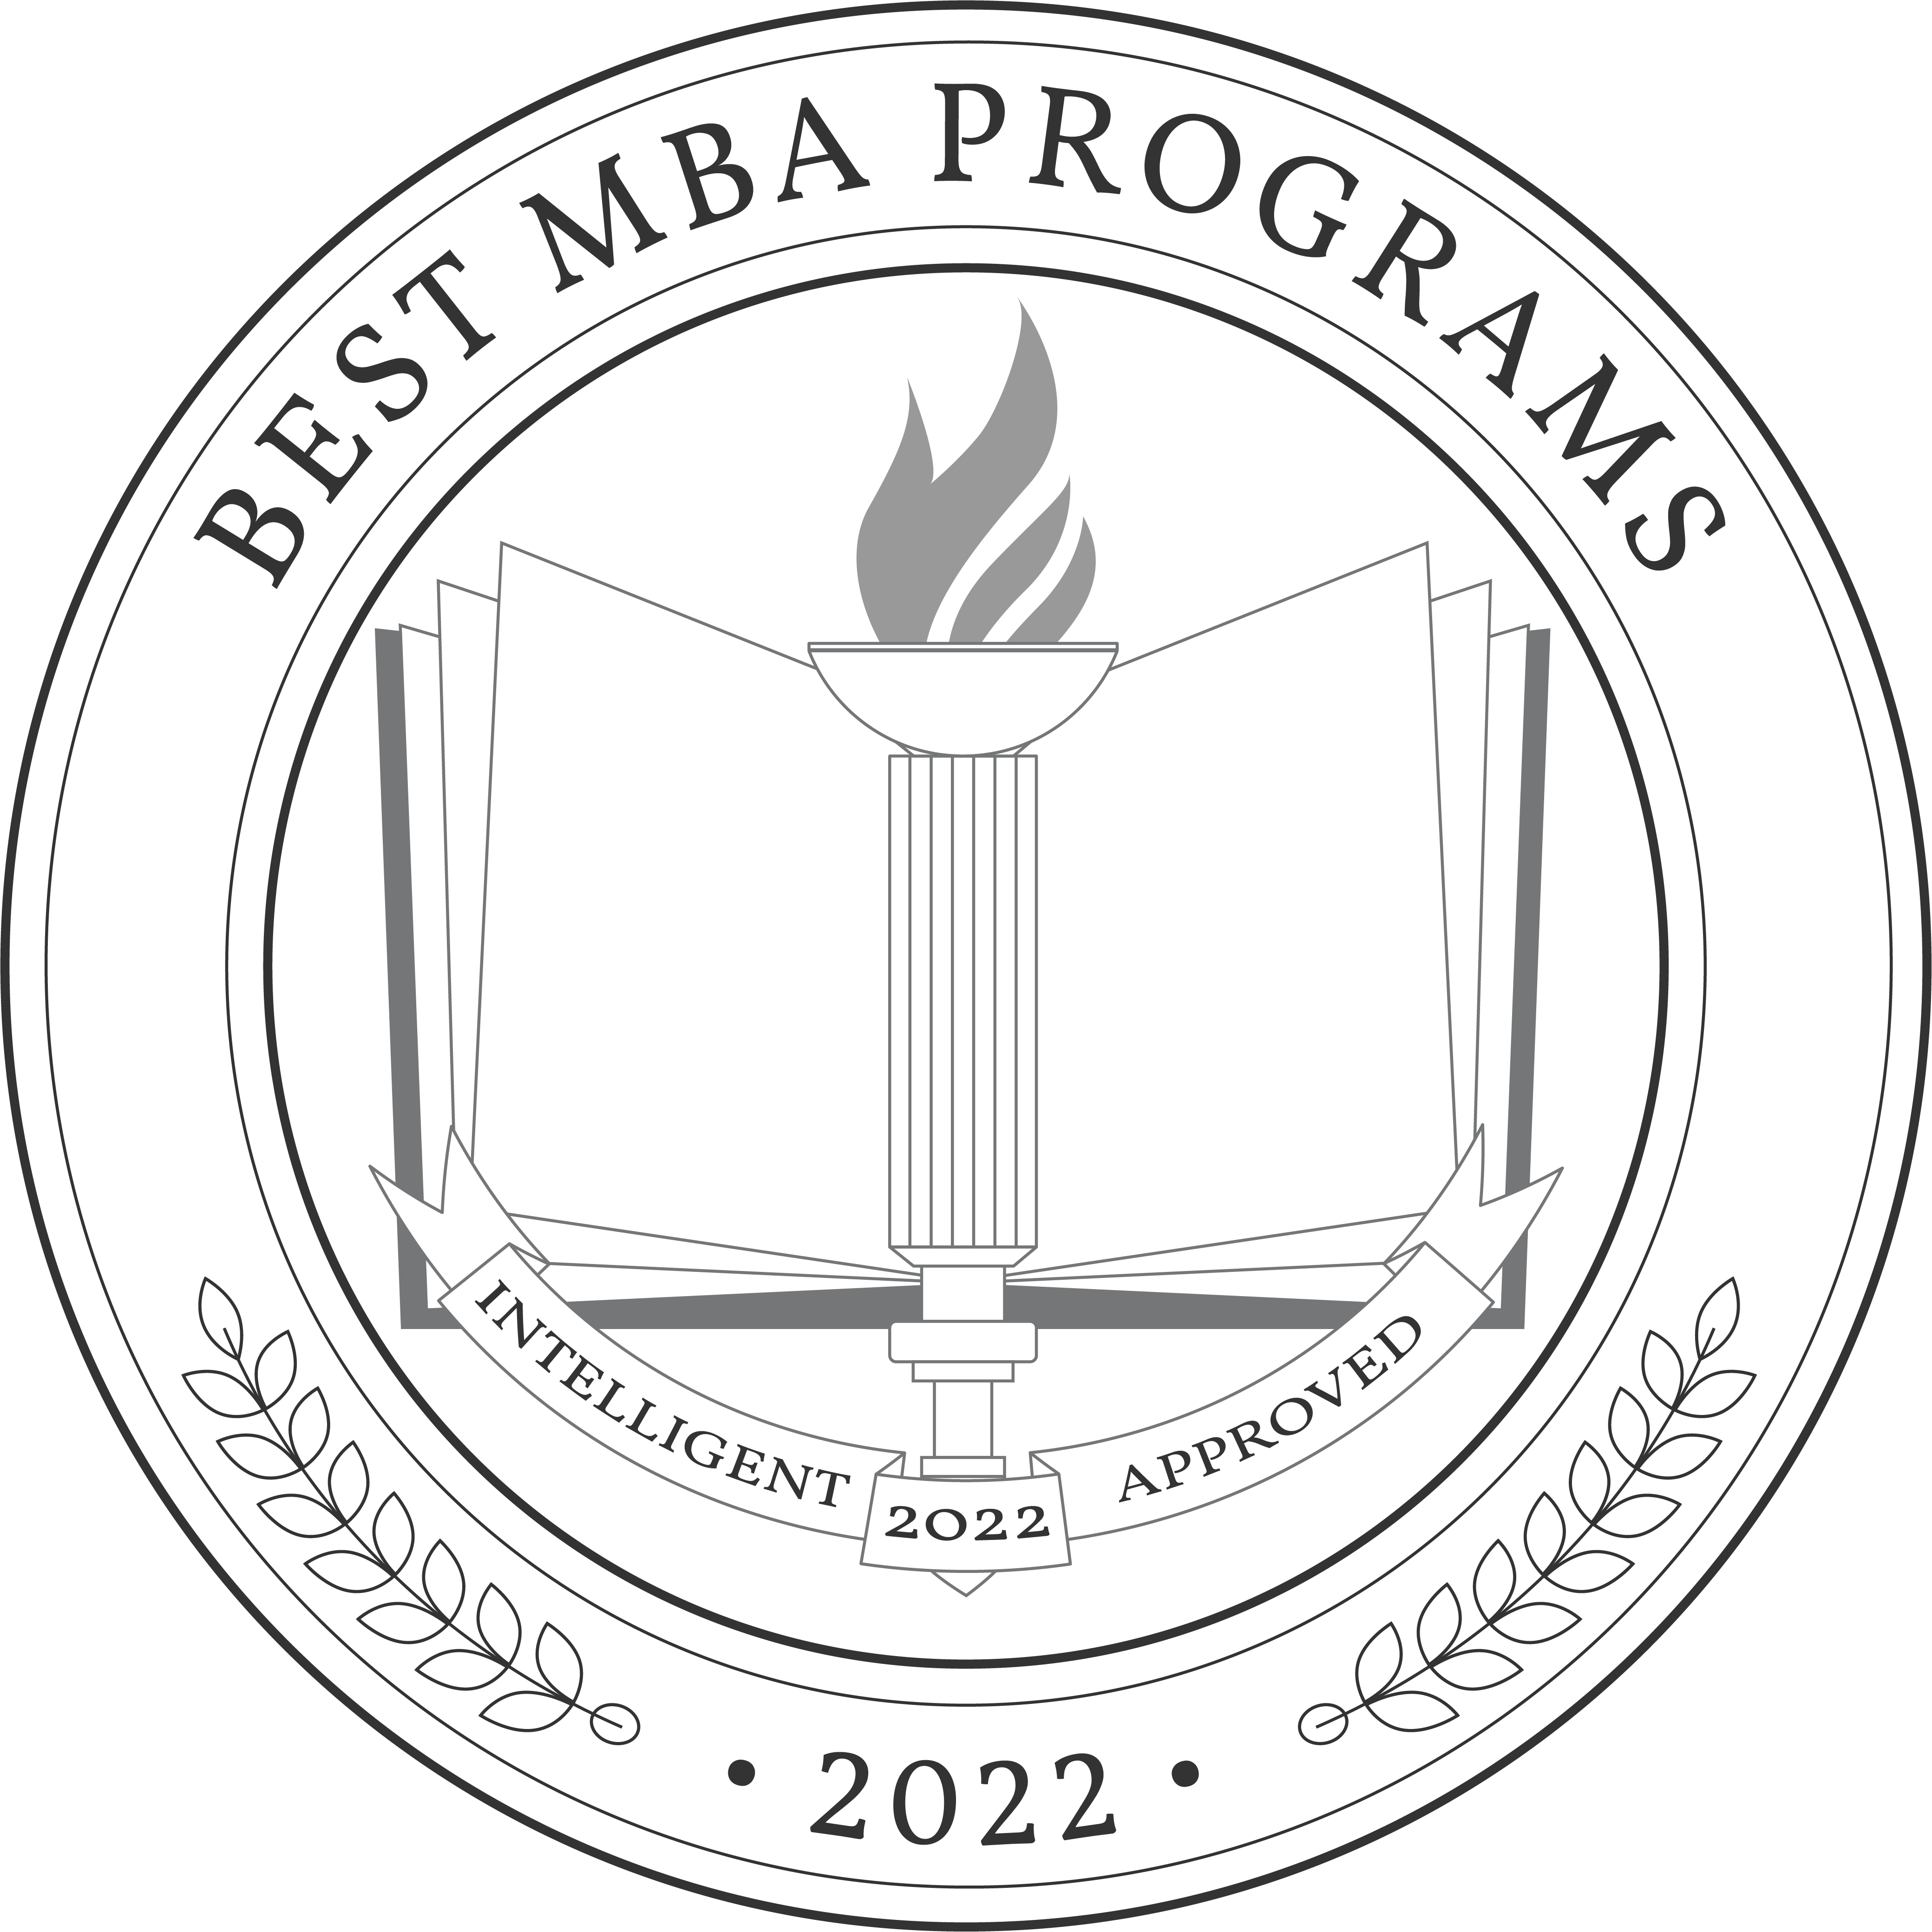 Best MBA Programs Badge